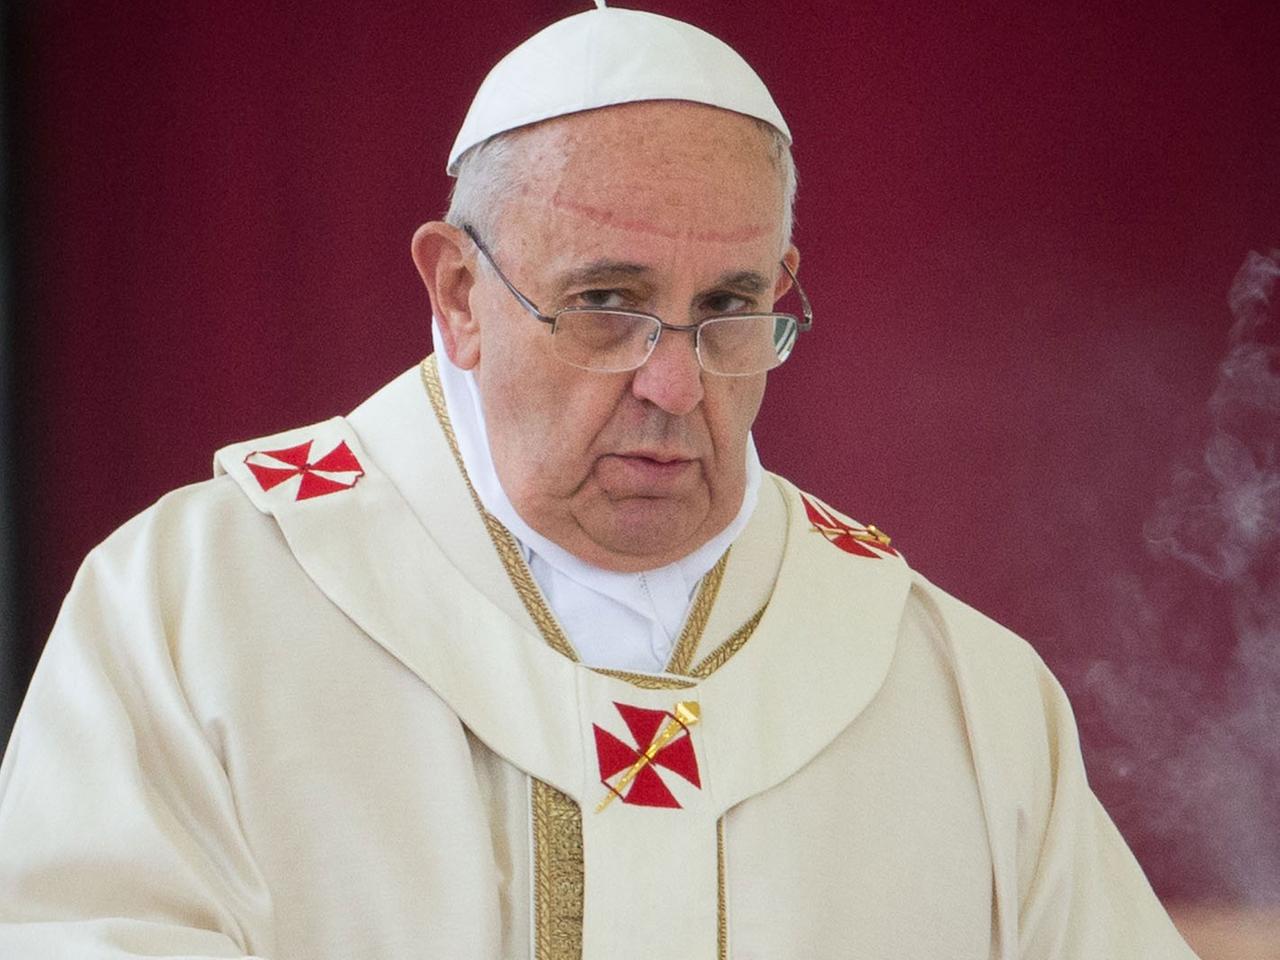 Papst Franziskus schaut nachdenklich am 27.04.2014 vor einer roten Wand auf dem Petersplatz in Rom.